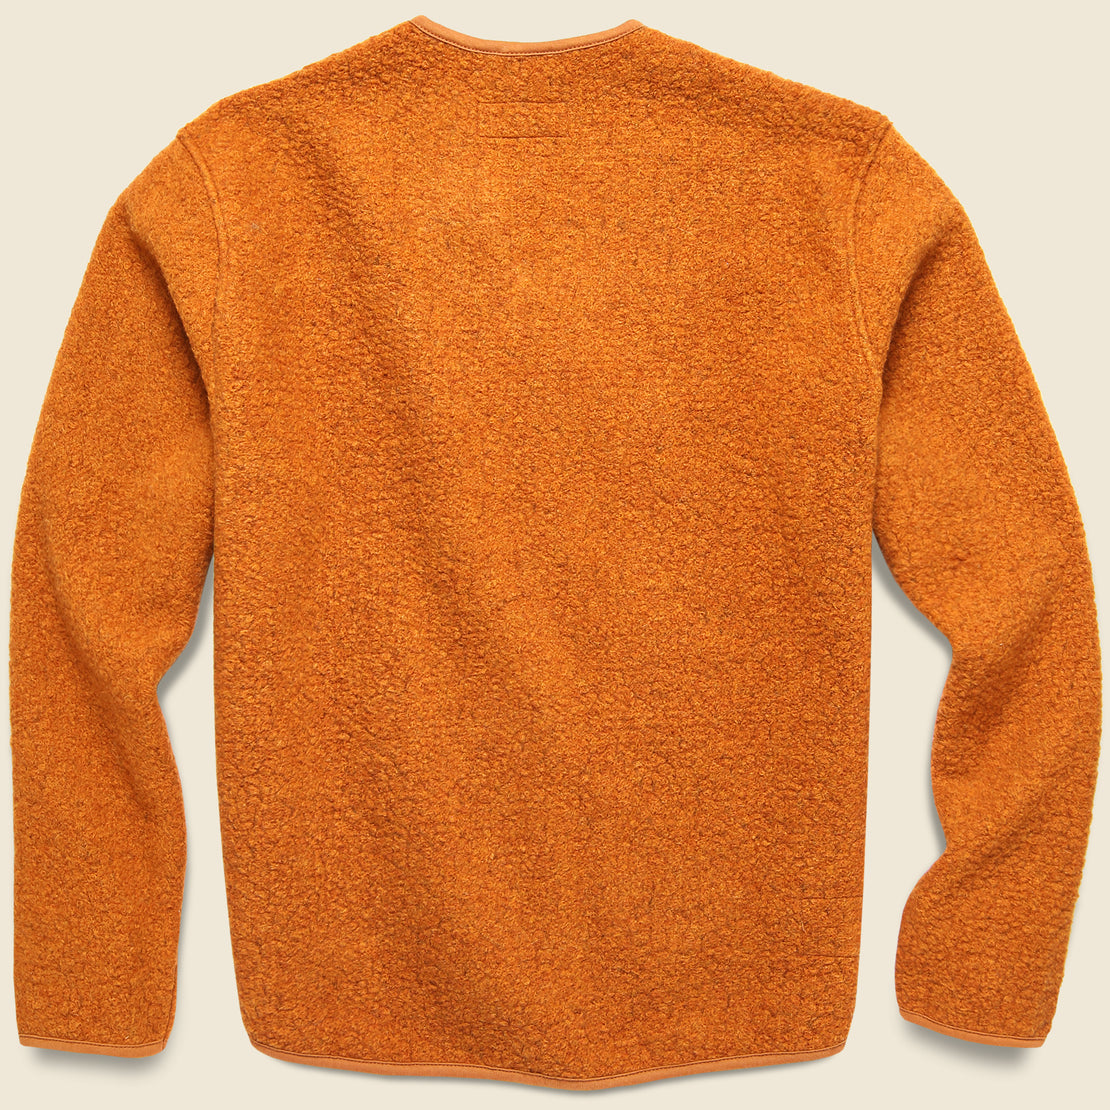 Tibet Fleece Zip Liner Jacket - Orange - Universal Works - STAG Provisions - Outerwear - Coat / Jacket